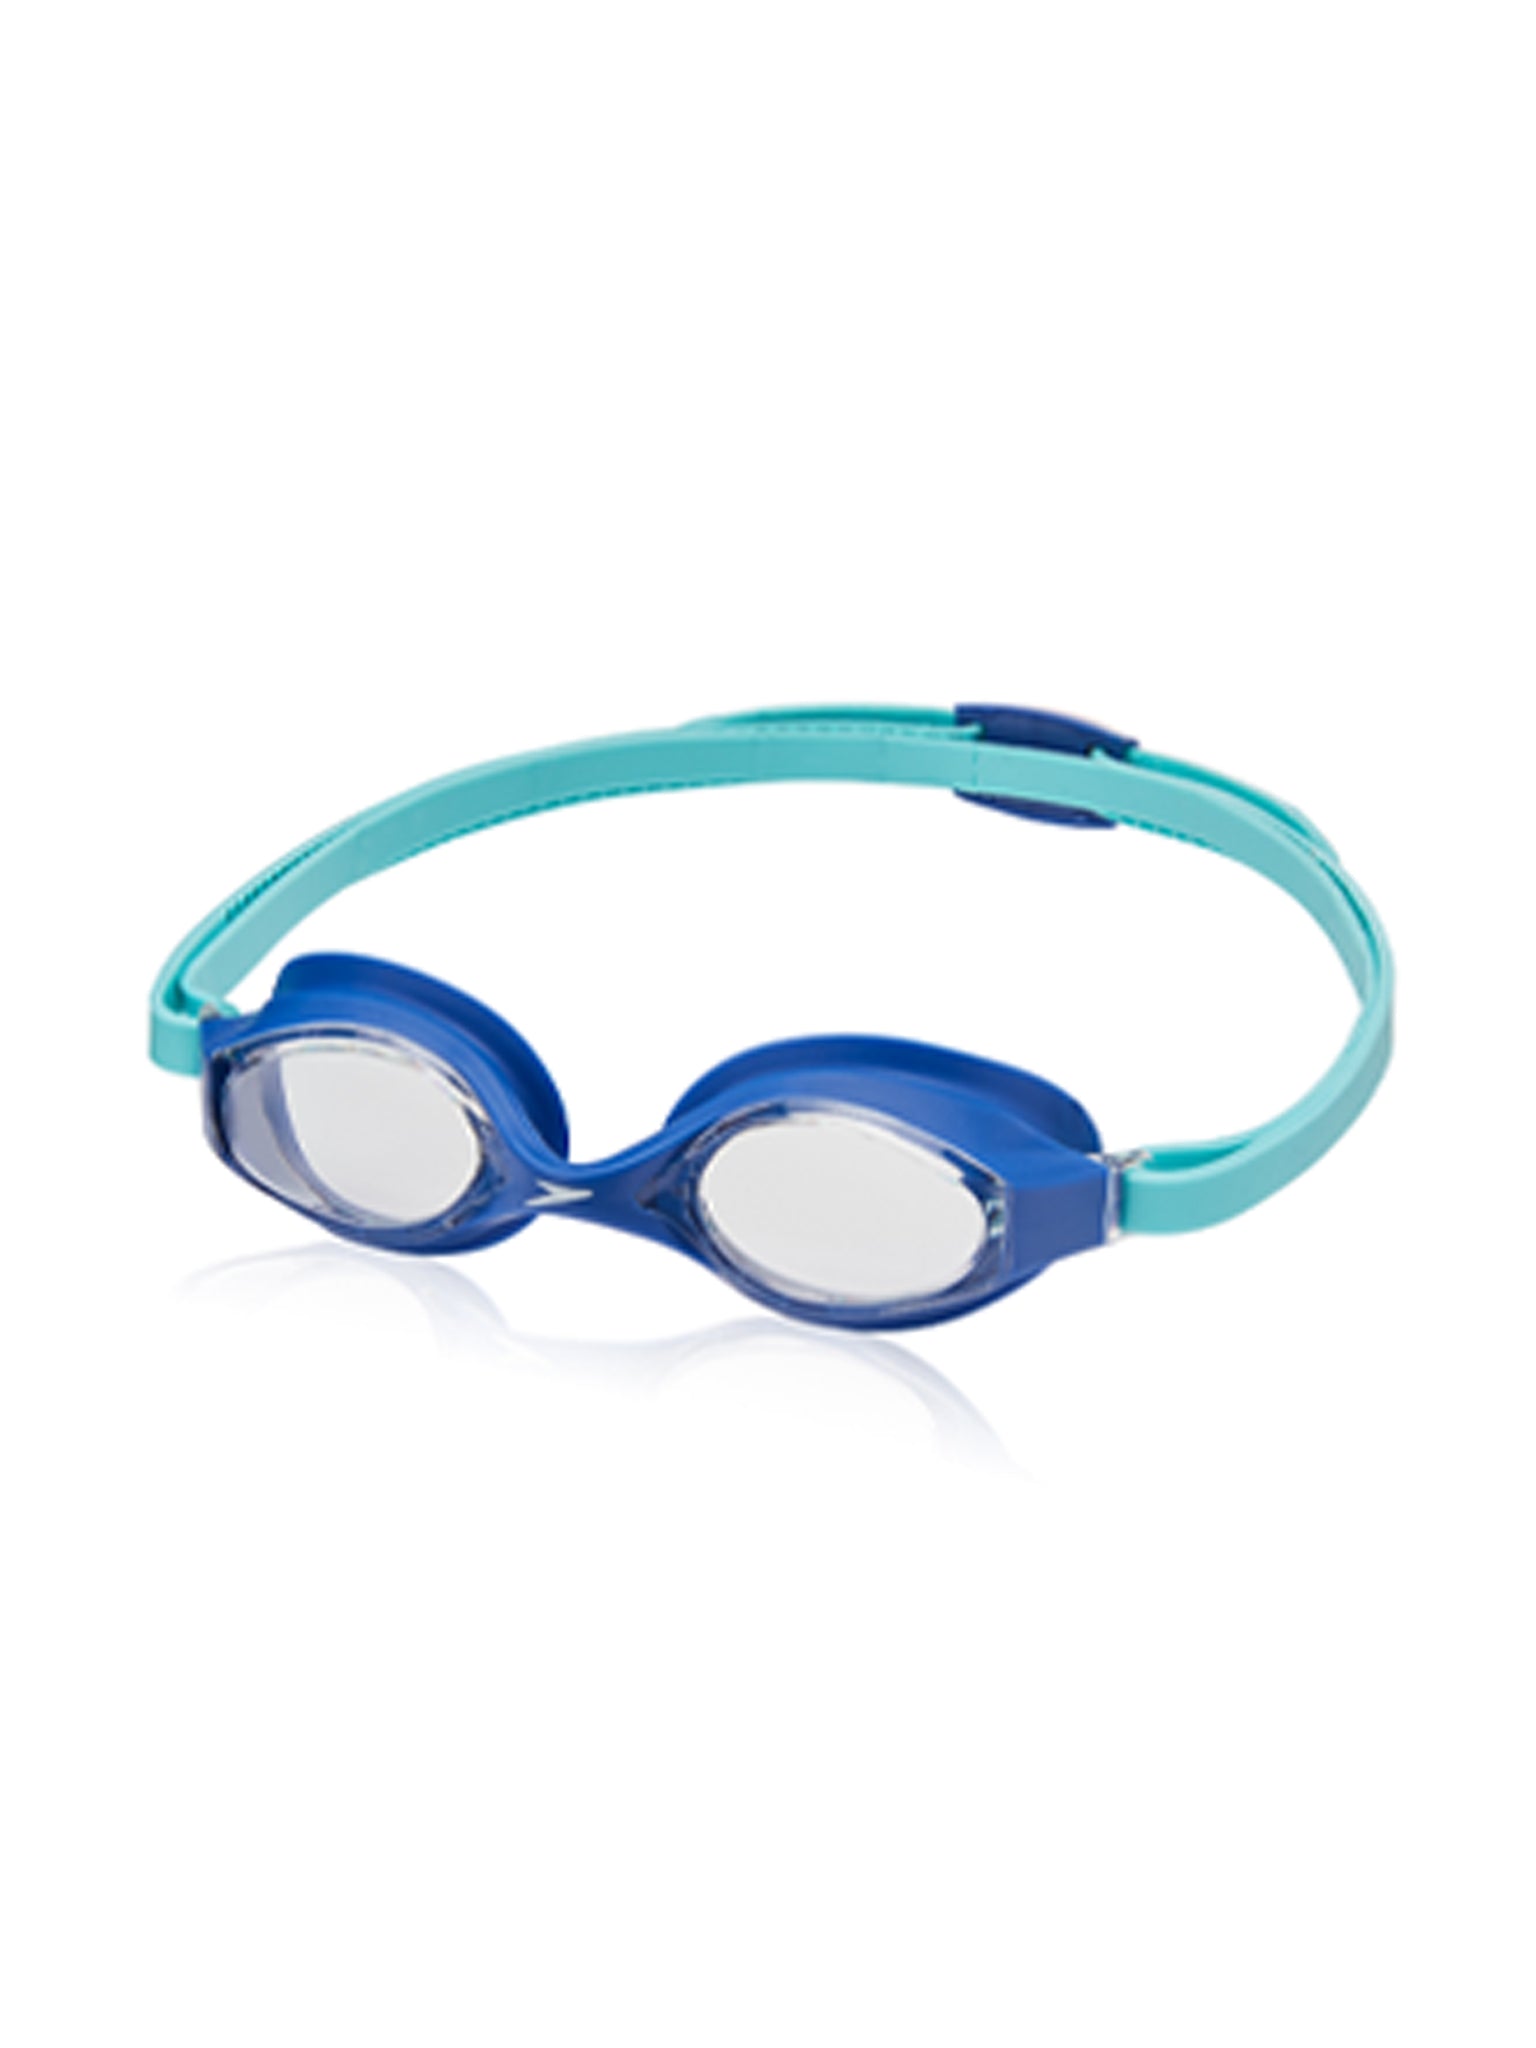 Lunettes de natation Super Flyer pour enfants - Bleu/Clair